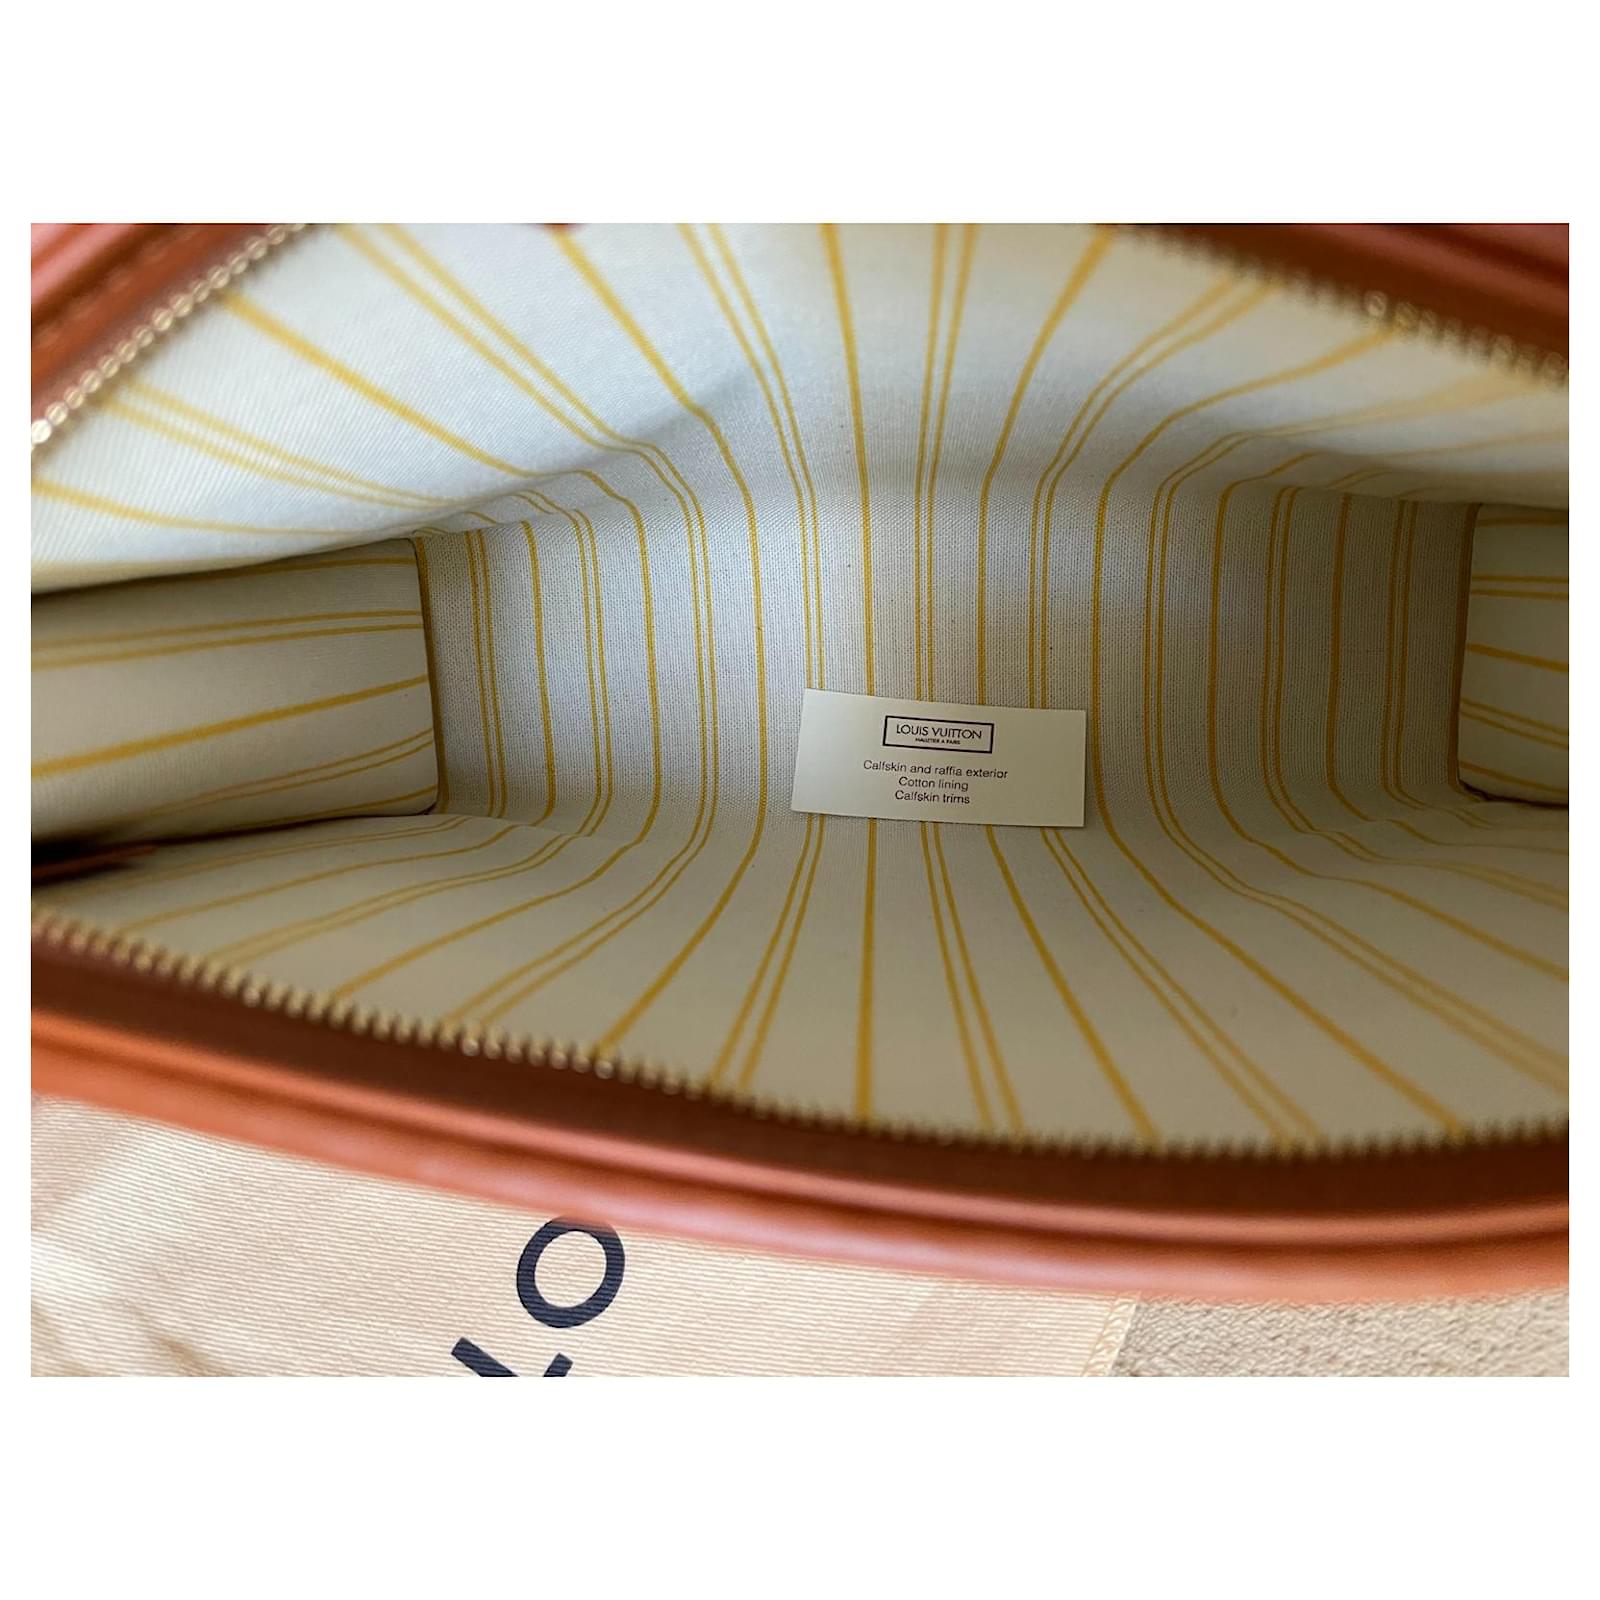 Louis Vuitton toilet pouch 26 Raffia monogram Beige Straw ref